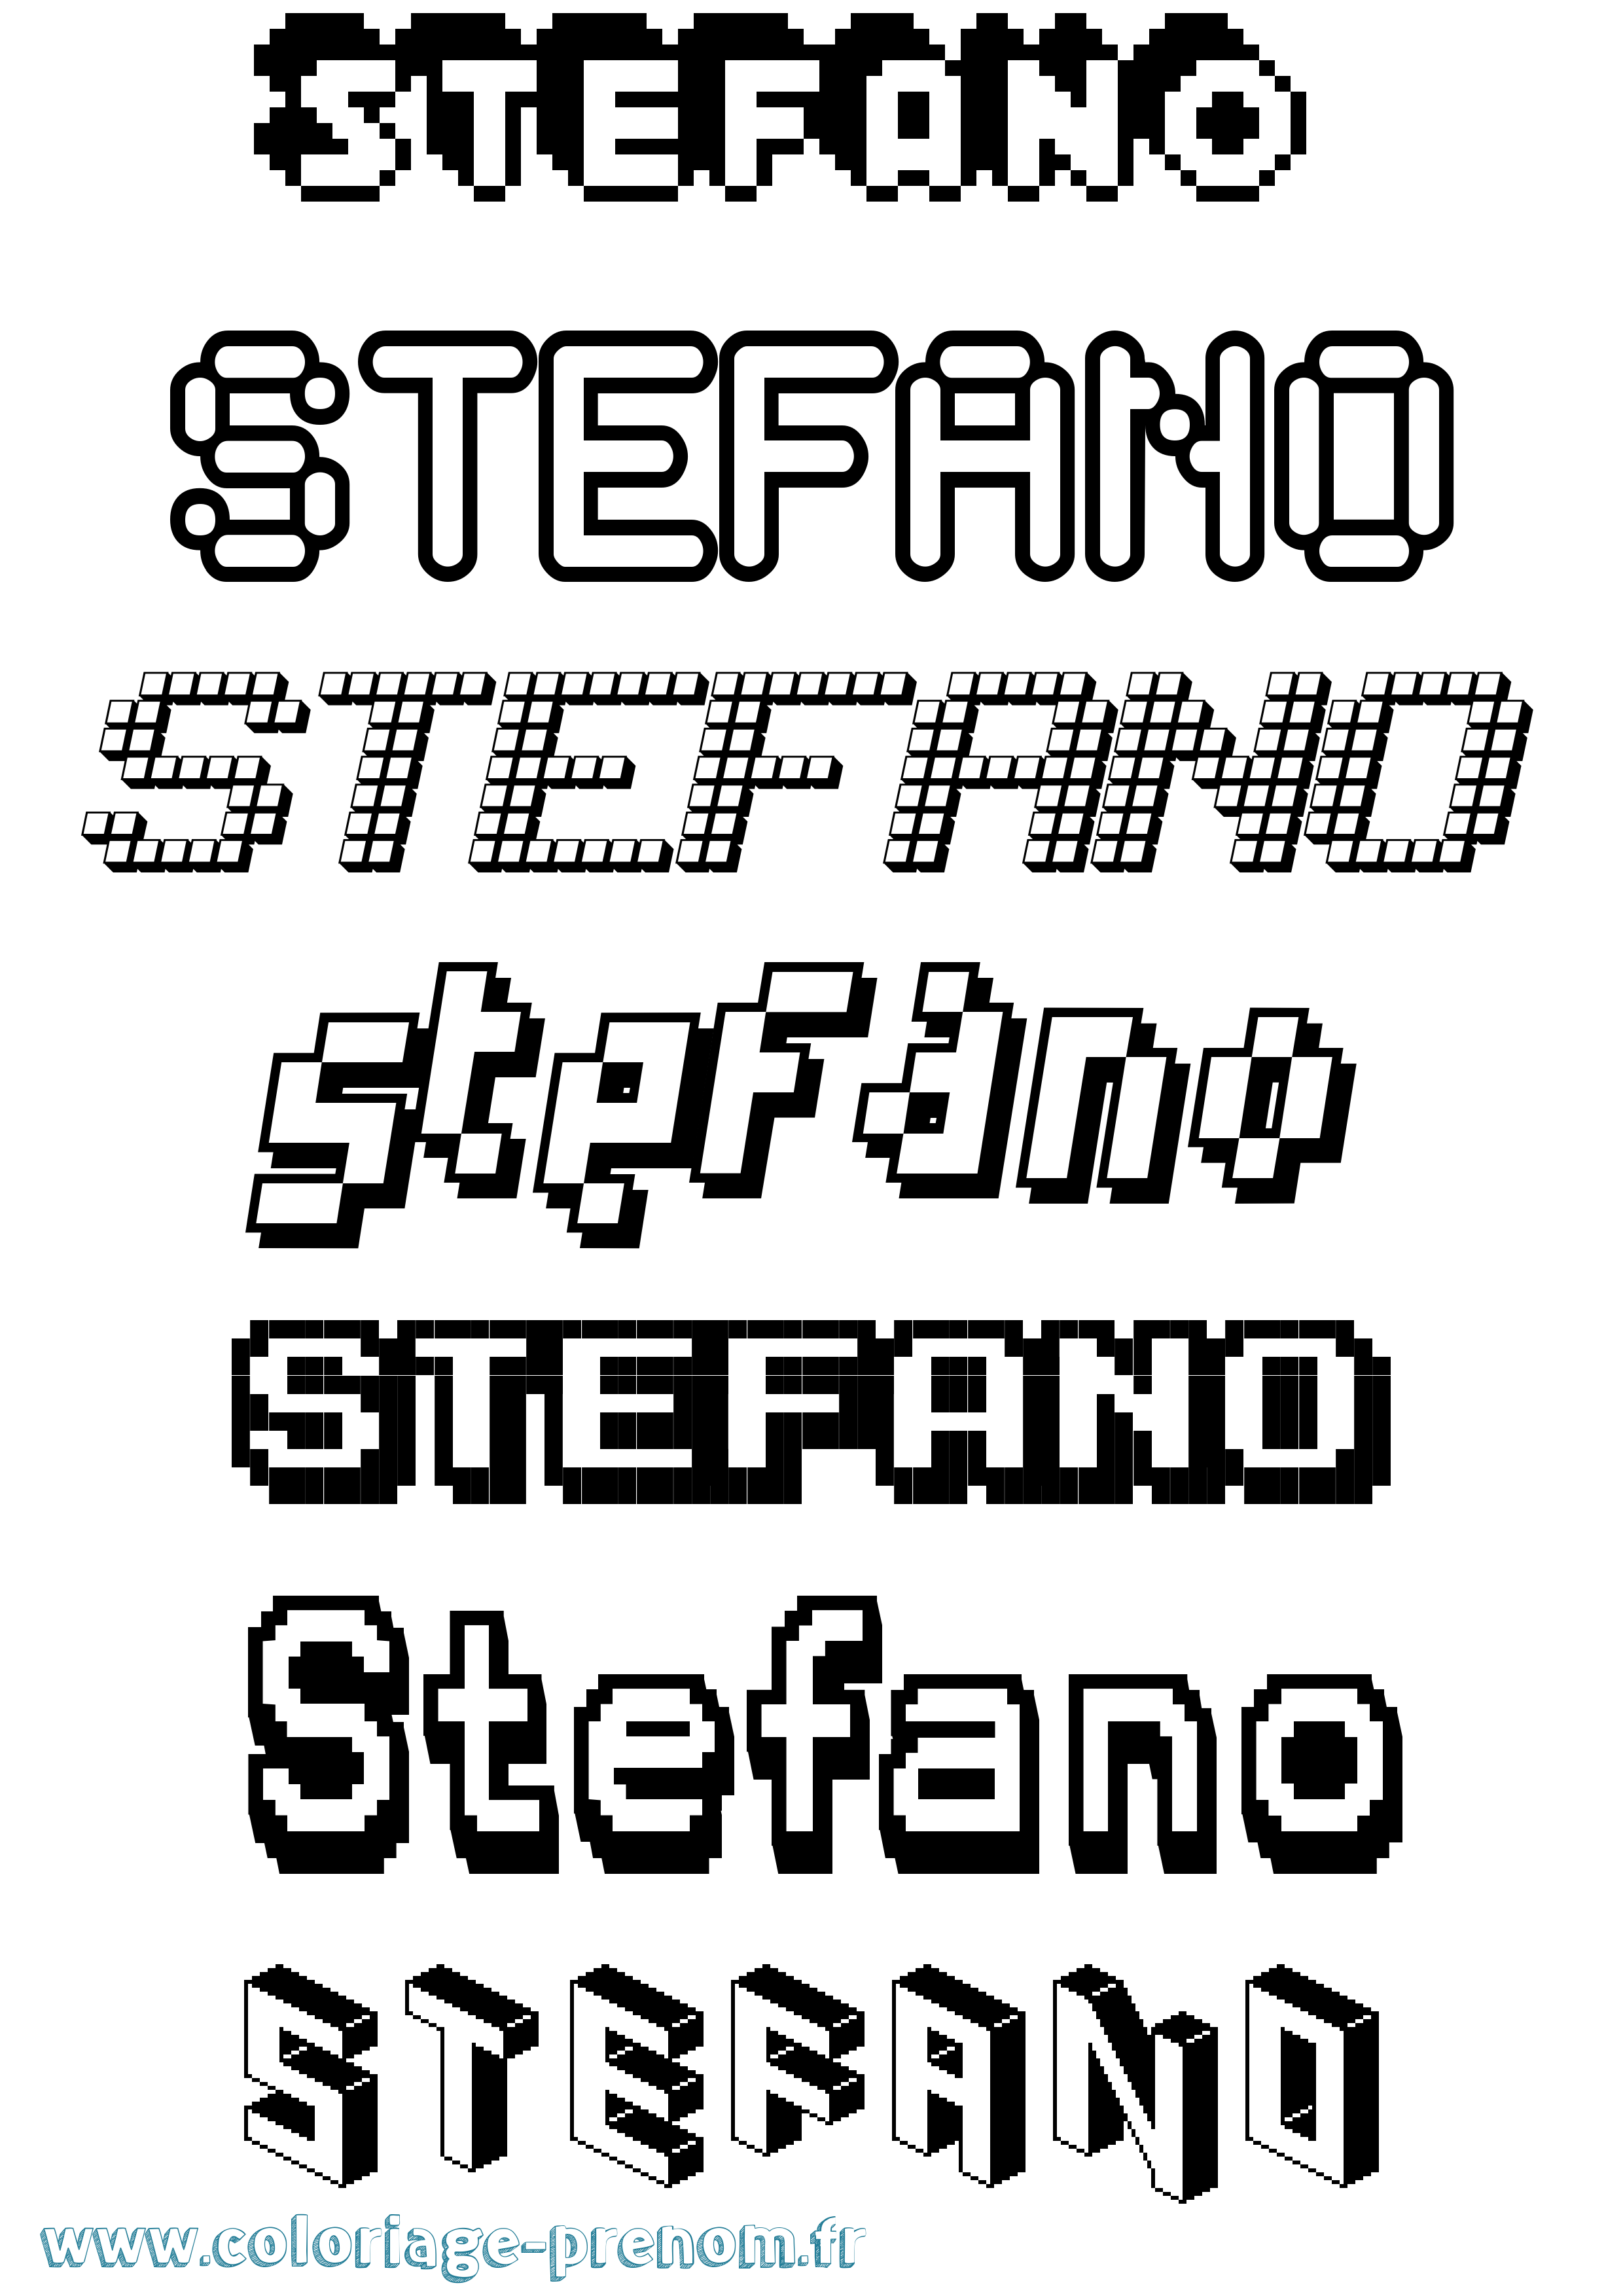 Coloriage prénom Stefano Pixel